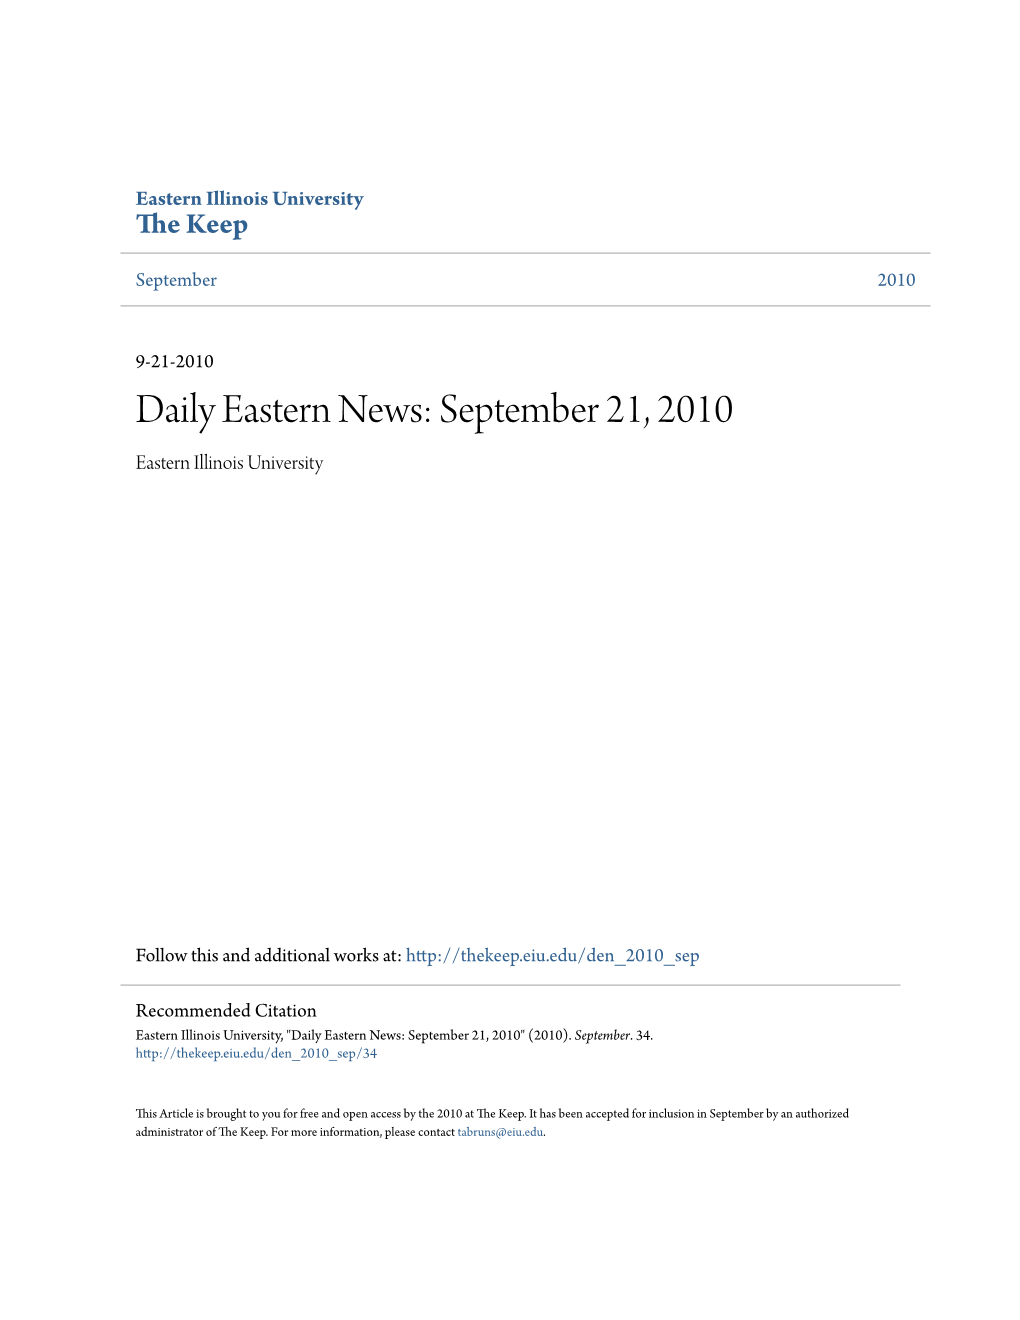 Daily Eastern News: September 21, 2010 Eastern Illinois University